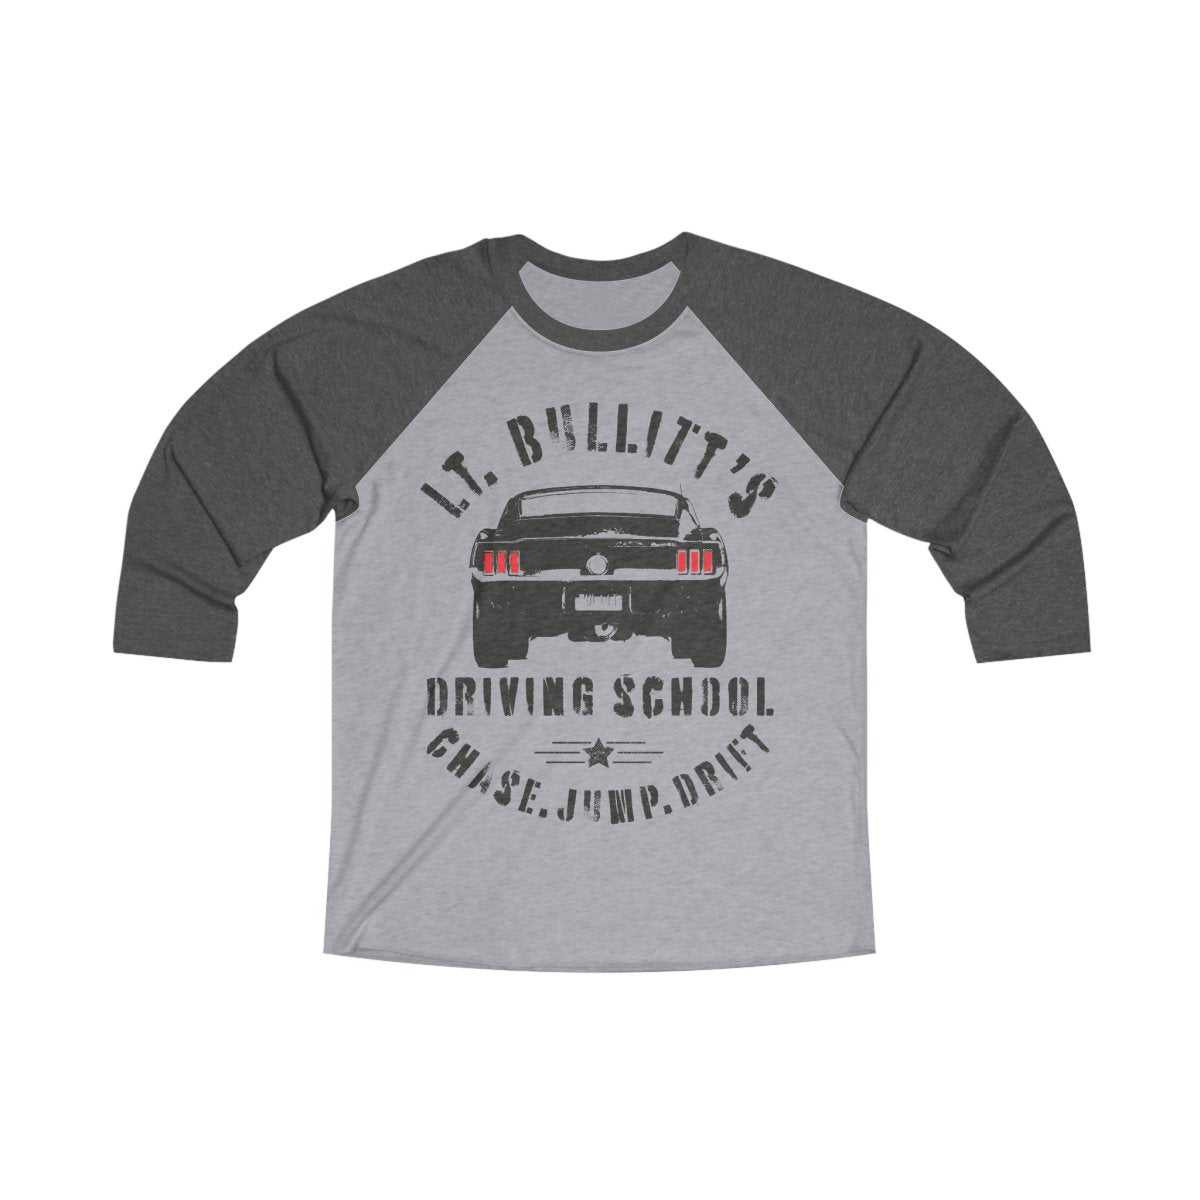 Bullitt's Driving School 3/4 T-Shirt, Car Chase, Jump, Drift, Driver Gift